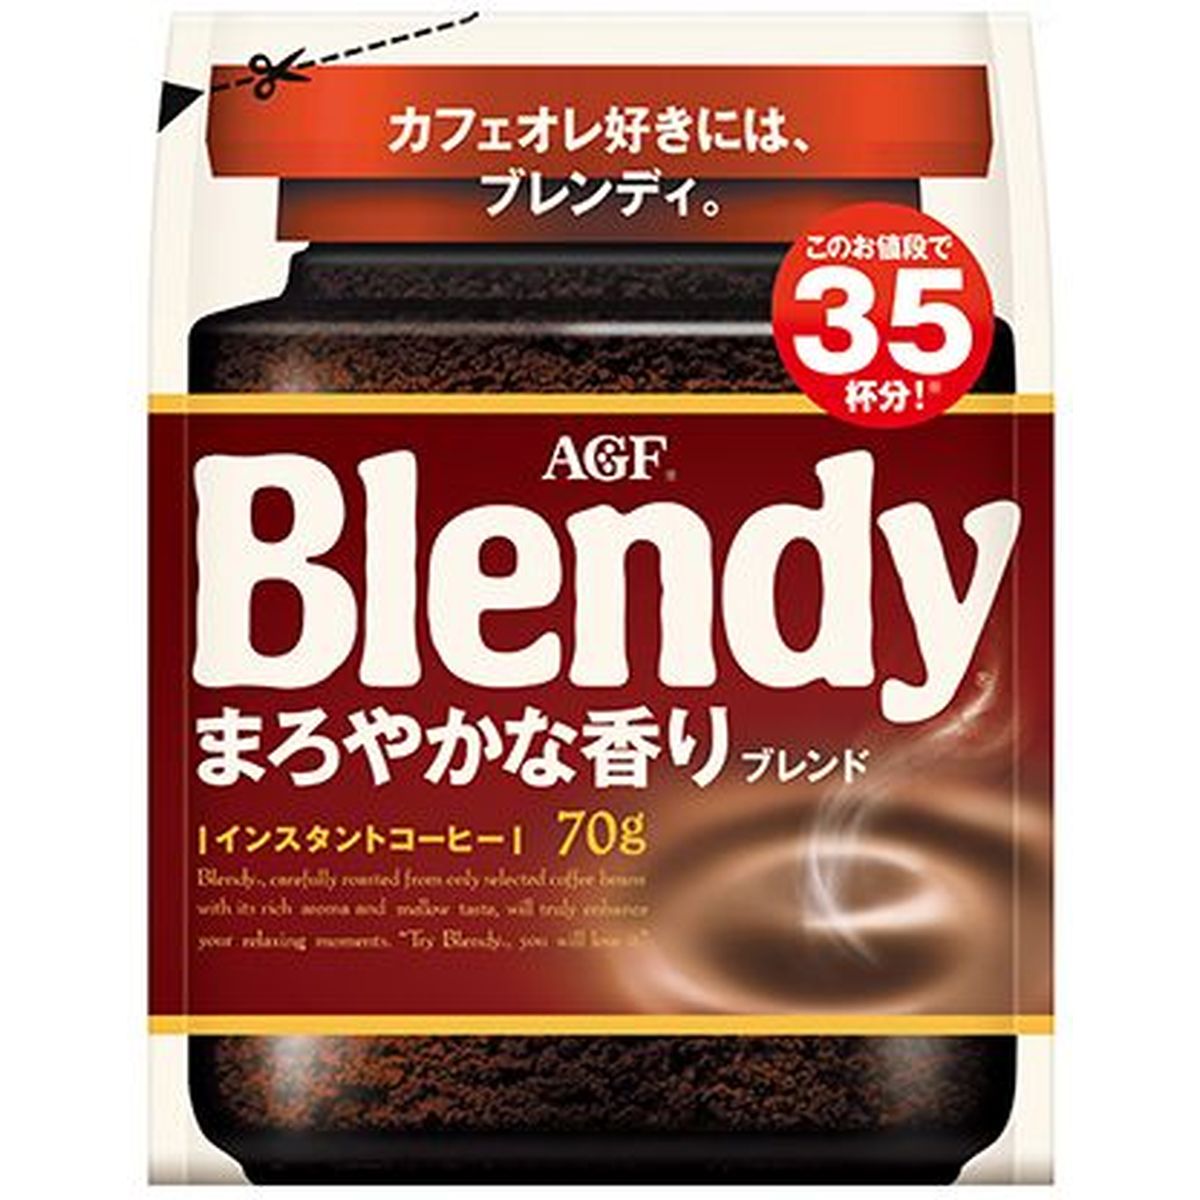 【12個入リ】AGF ブレンディ マロヤカナ香リブレンド 袋 70g